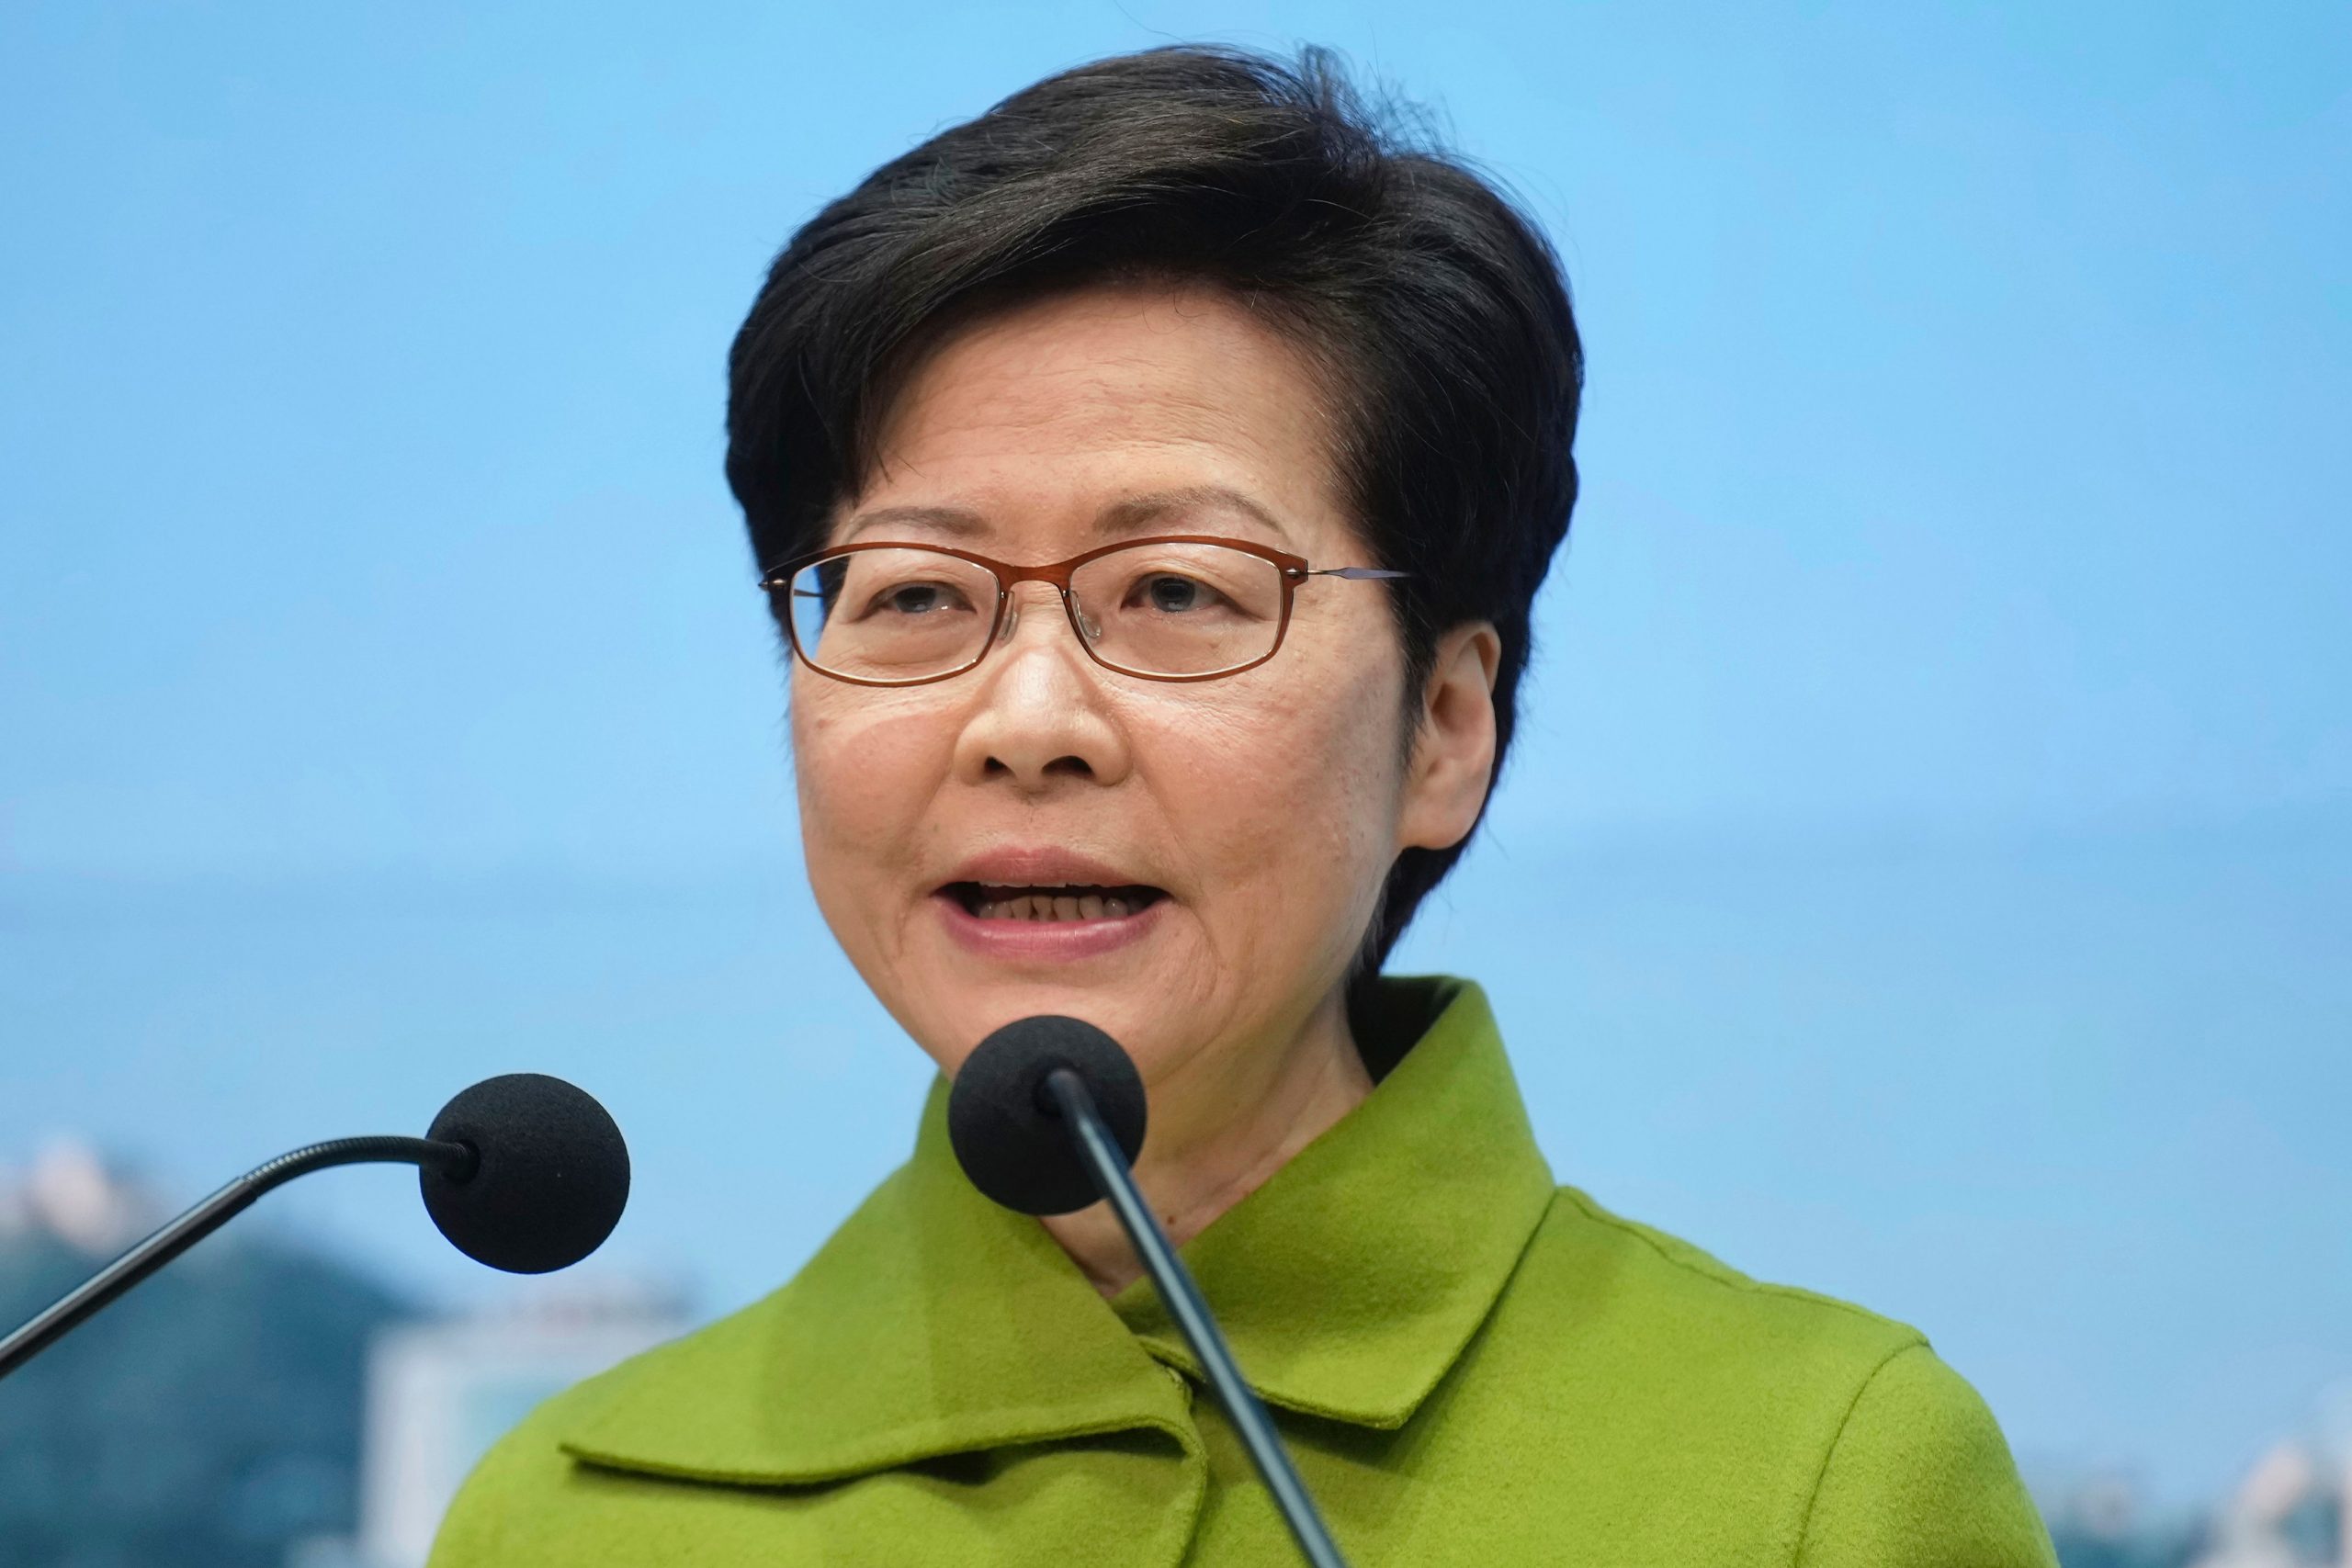 Carrie Lam, Hong Kong leader, won’t seek second term